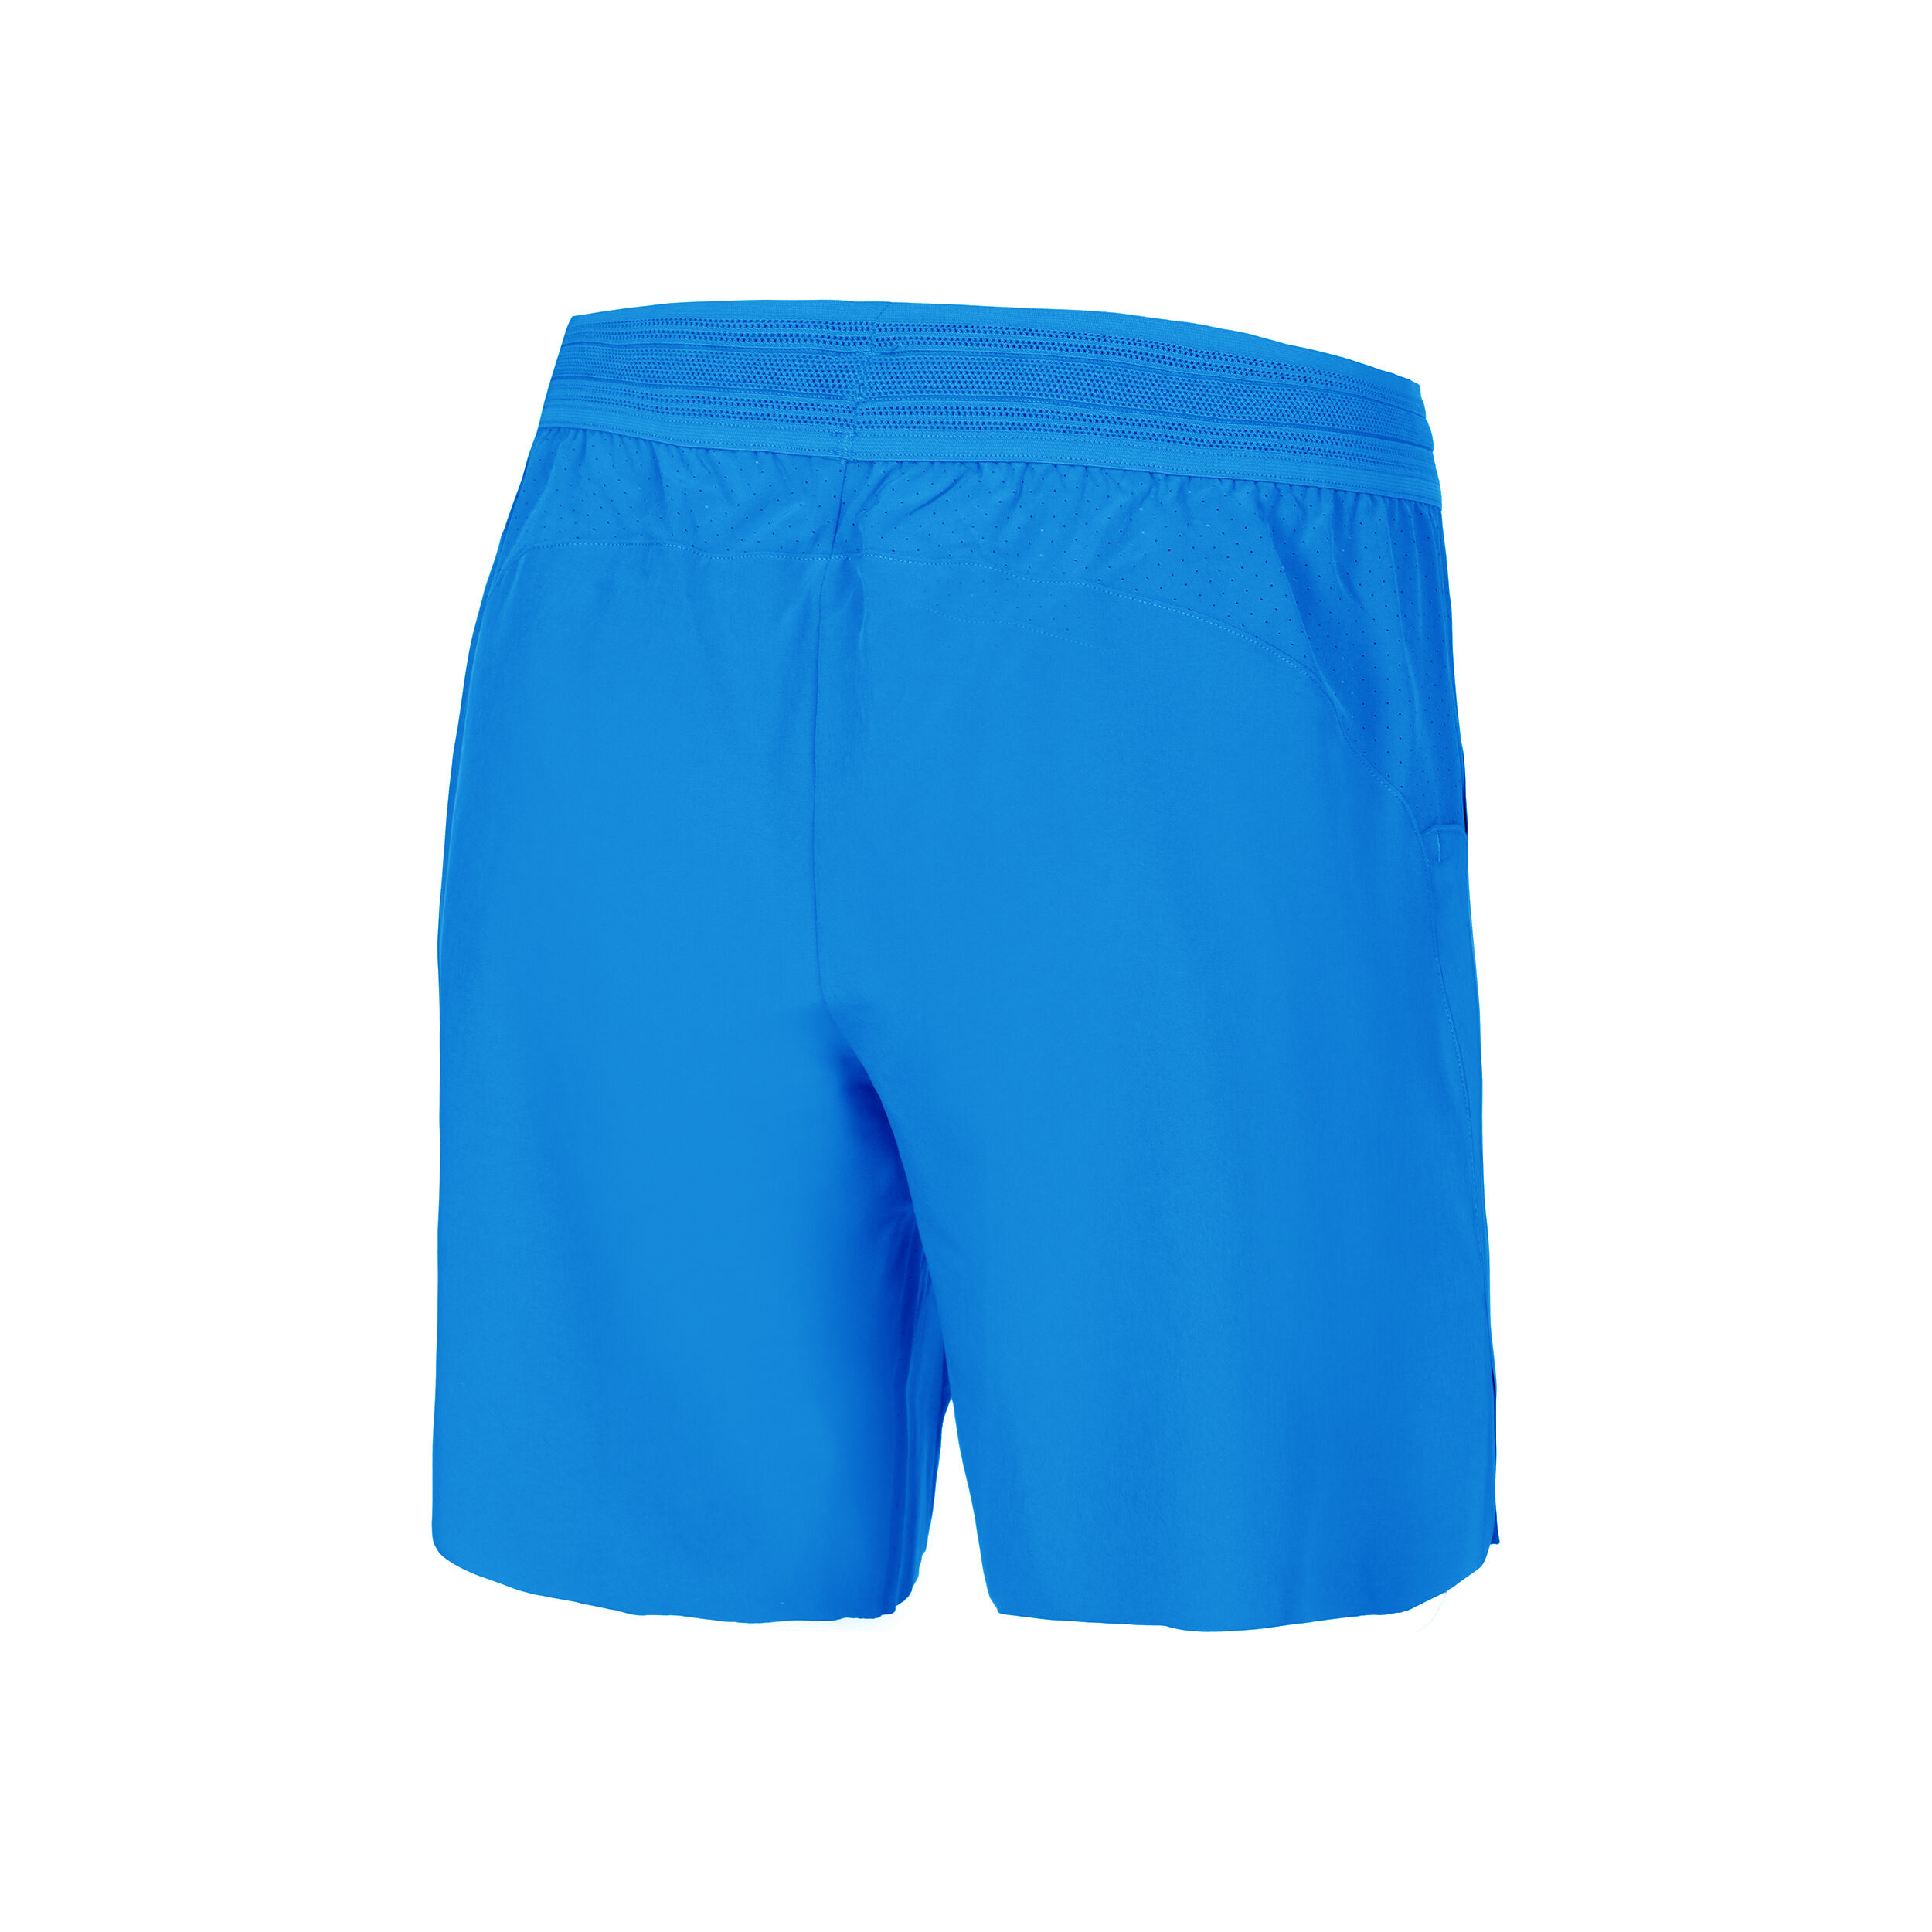 RAFA Dri-Fit Advantage 7in Shorts Men - Blue